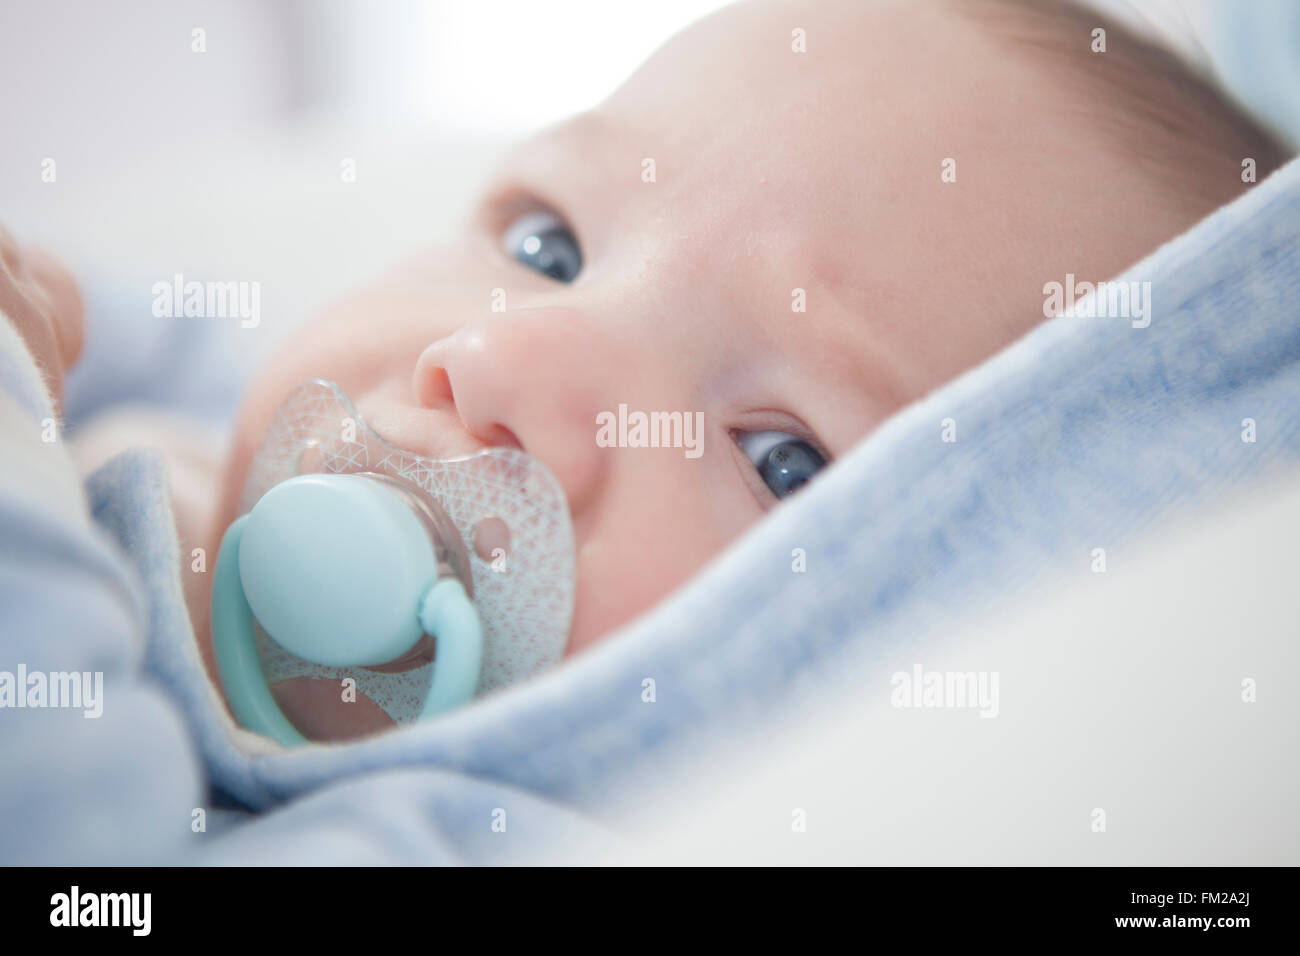 Bebé con chupete: fotografía de stock © hansenn #8299286